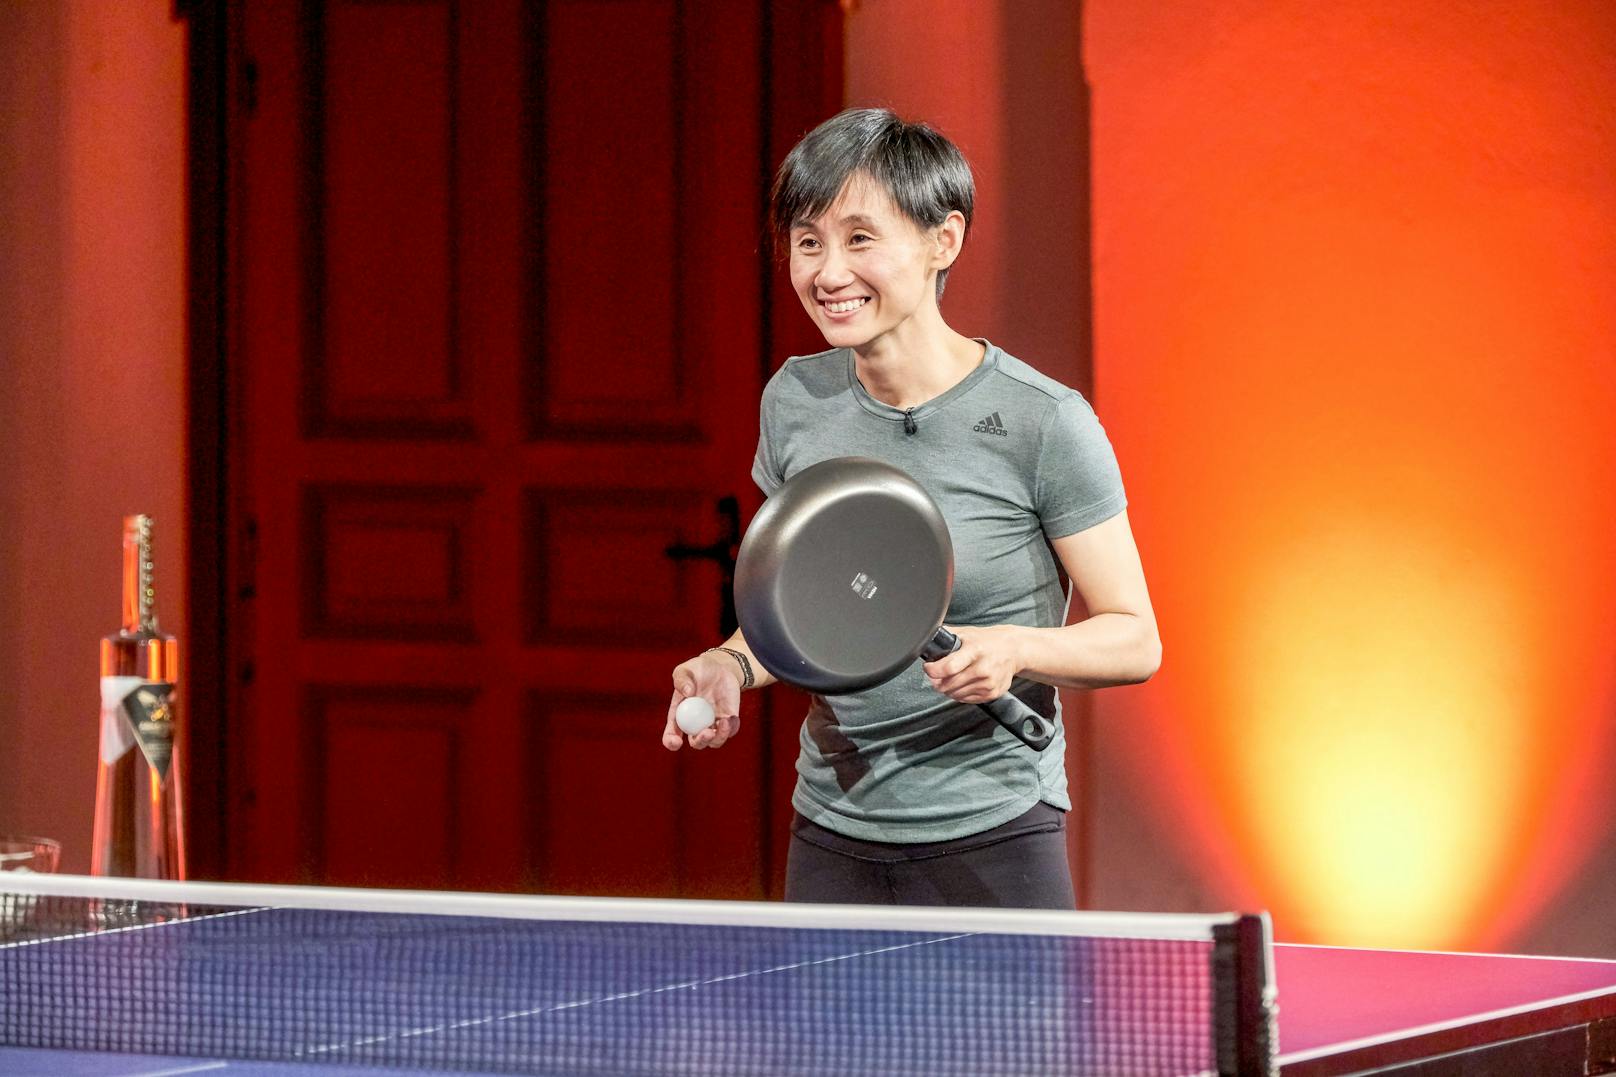 Tischtennis: Liu Jia